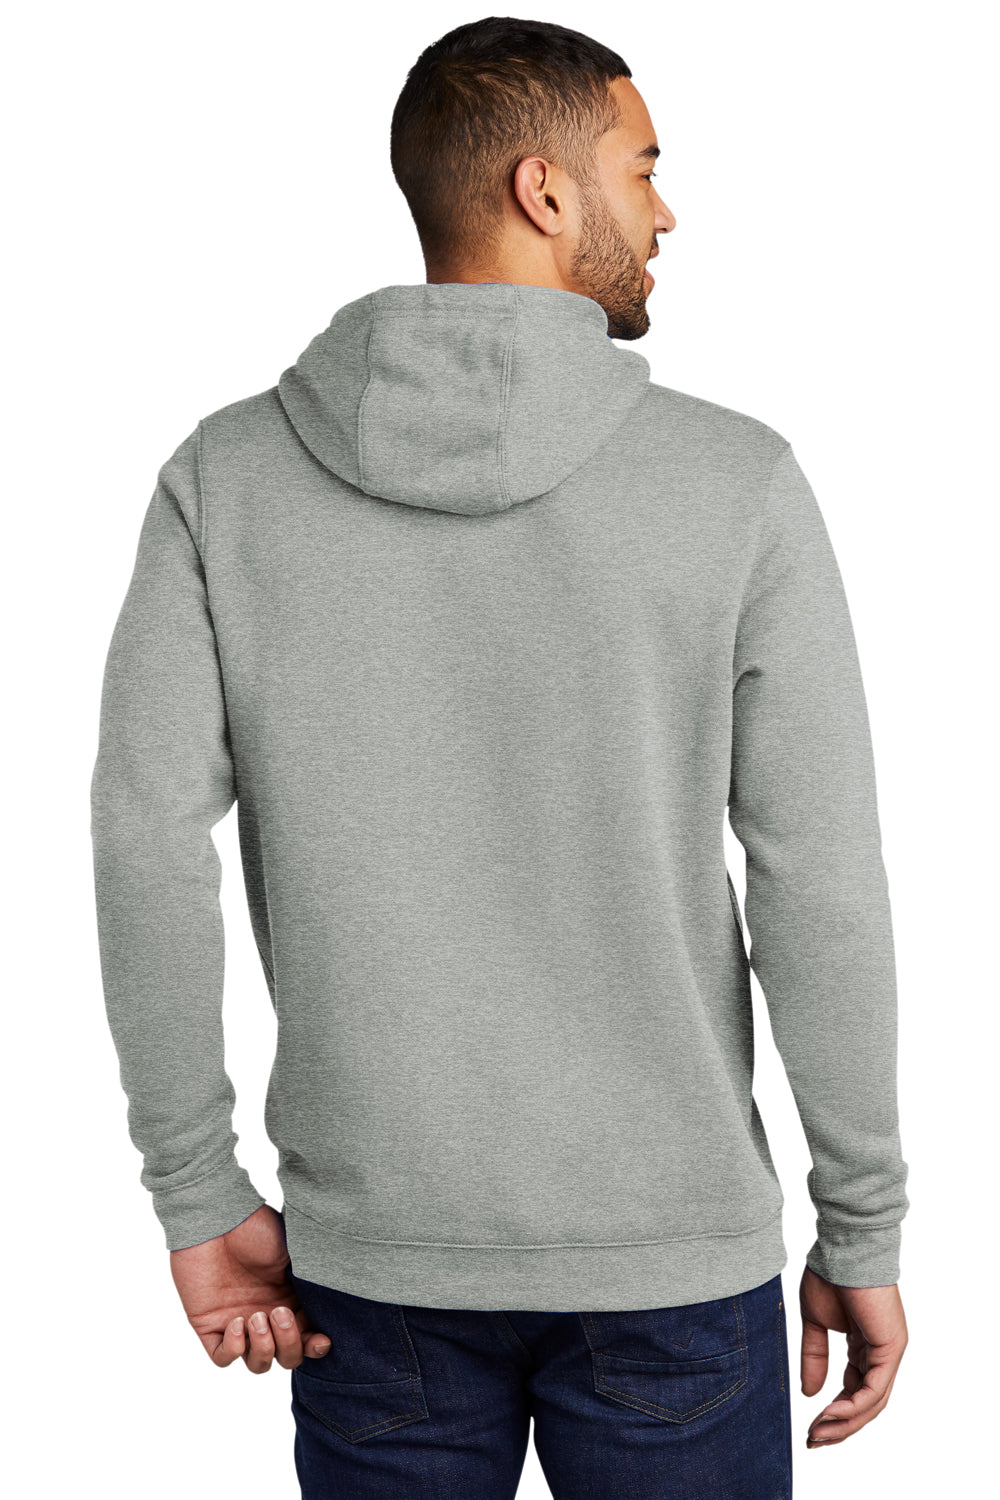 Nike CJ1611 Mens Club Fleece Hooded Sweatshirt Hoodie Heather Dark Grey Model Back